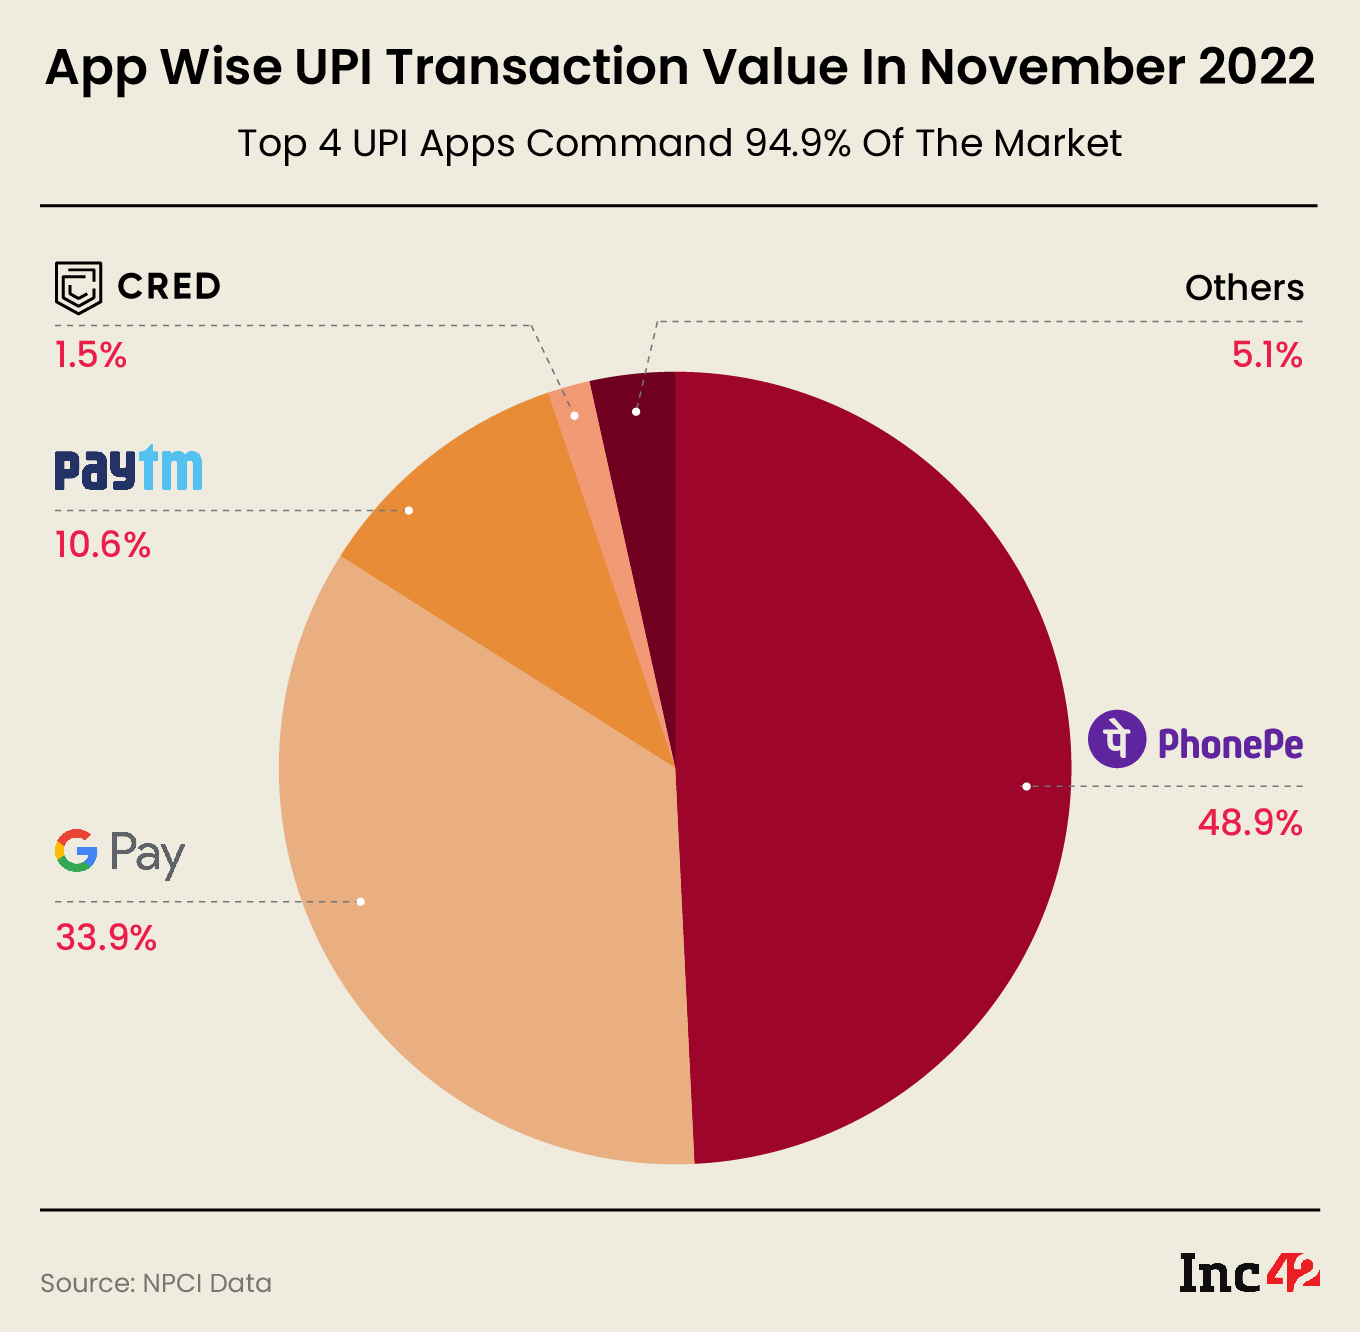 App Wise UPI Transaction Value distribution